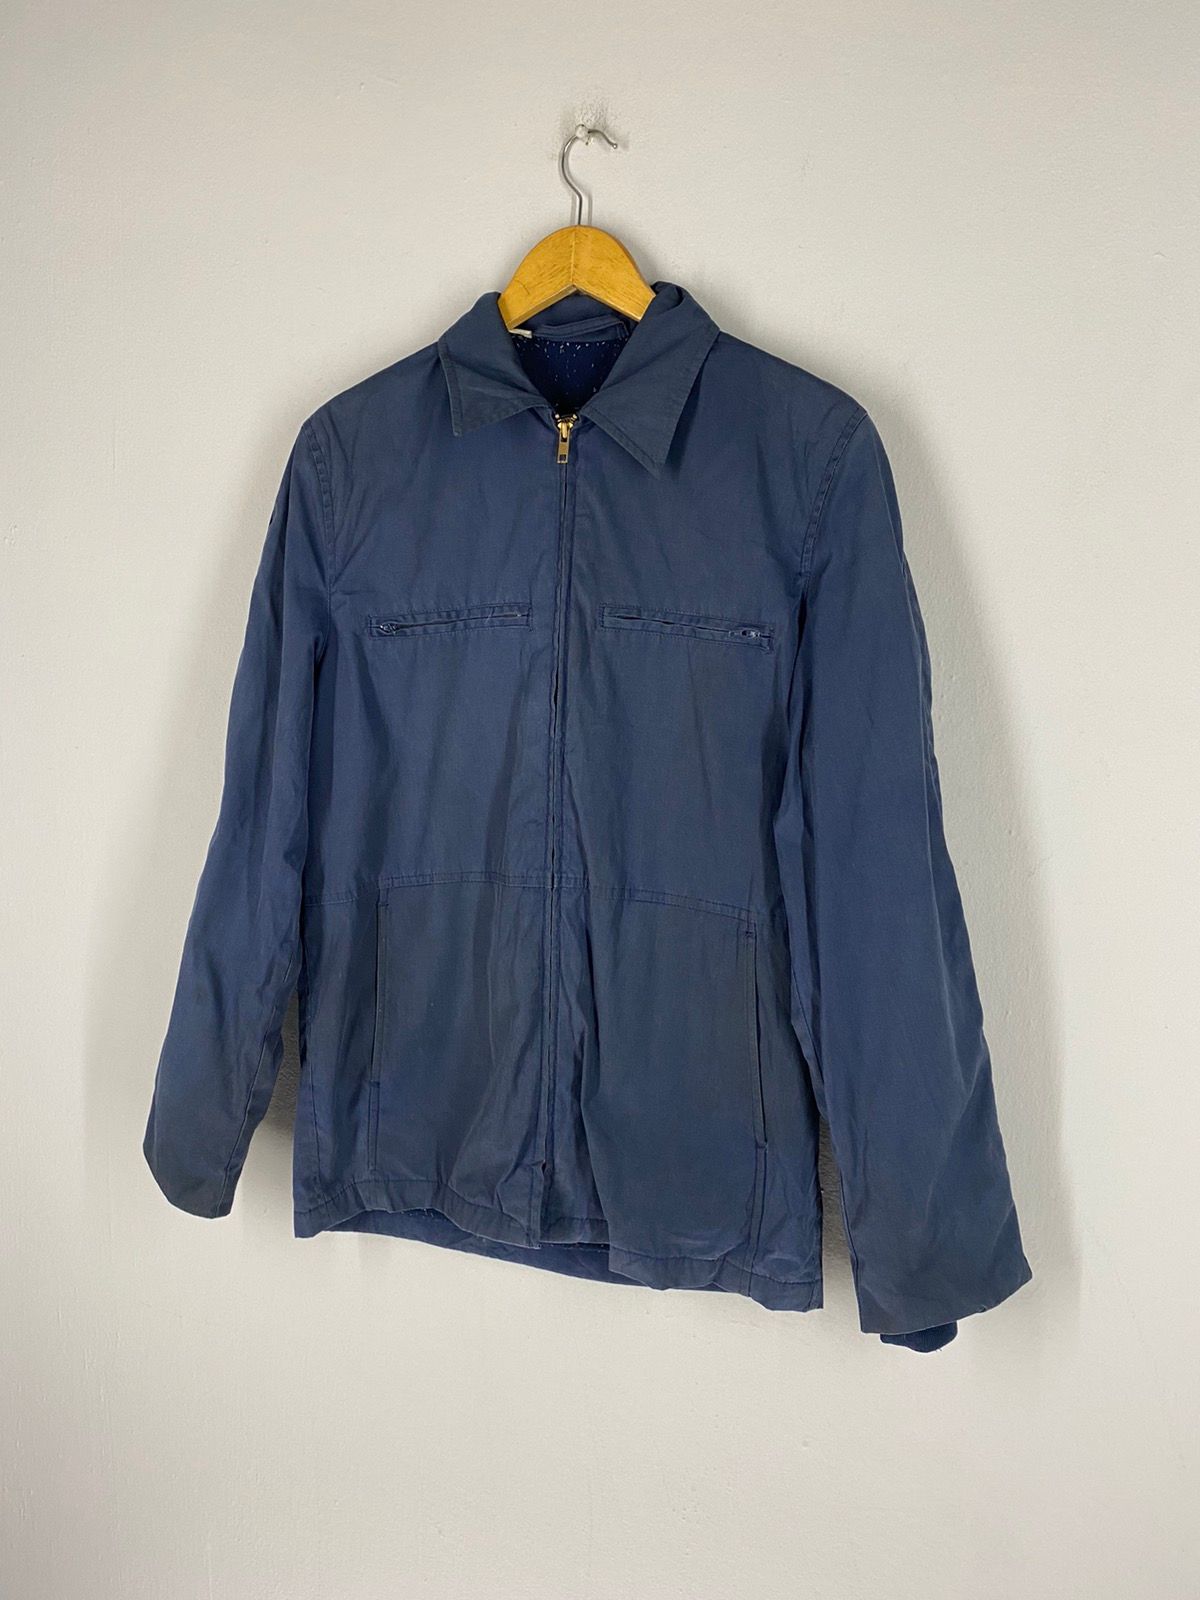 Usn Vintage 80s USN 32 Top Zipper Jacket Size US S / EU 44-46 / 1 - 5 Thumbnail